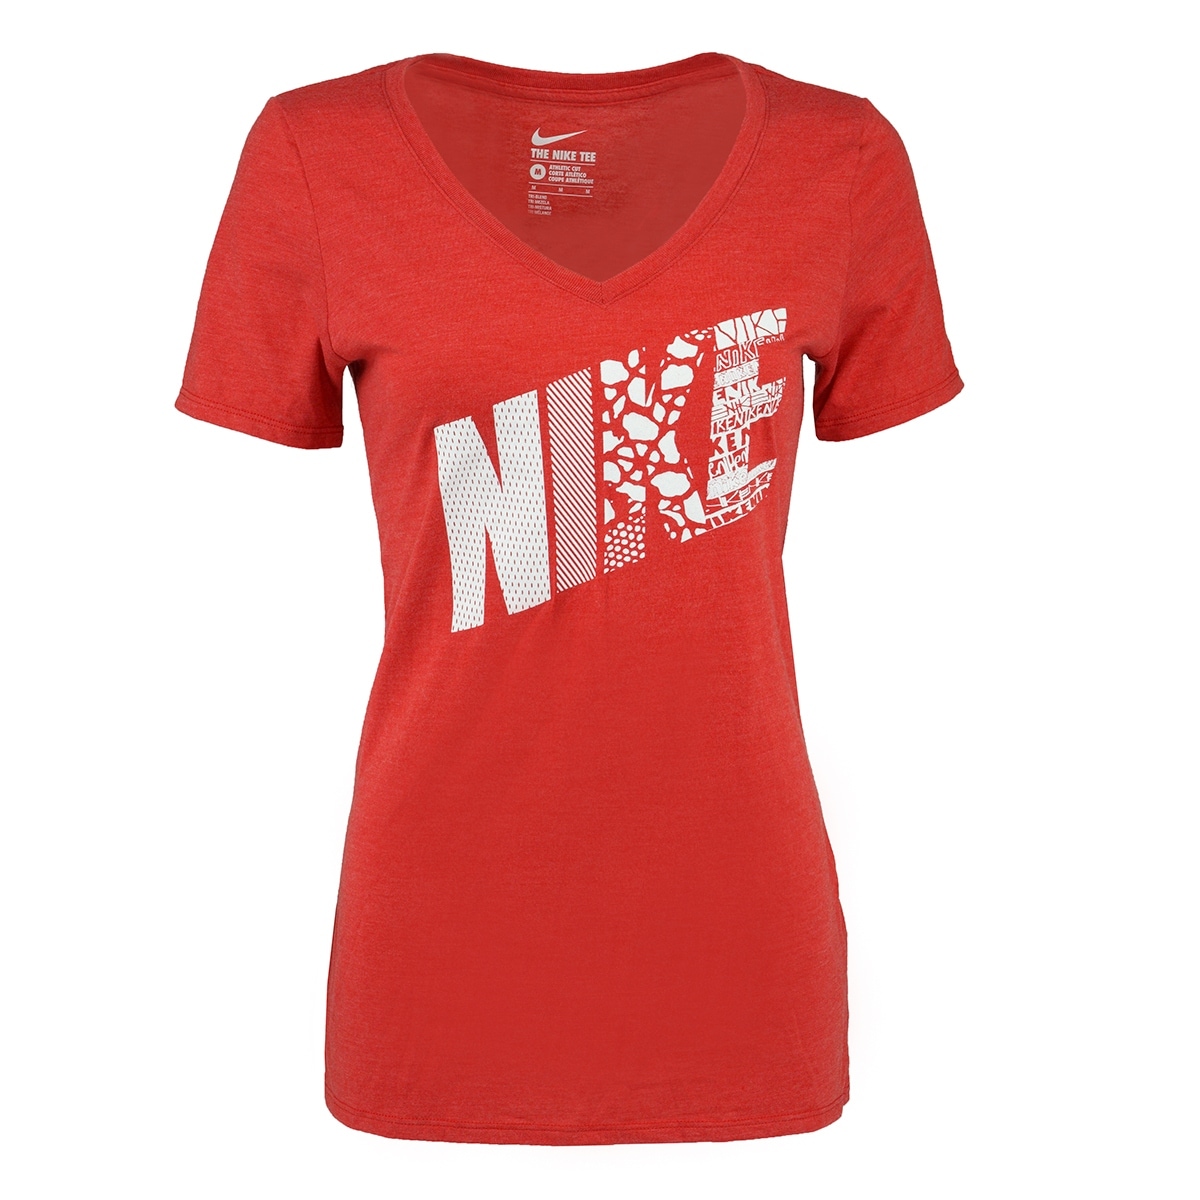 nike women's athletic shirts